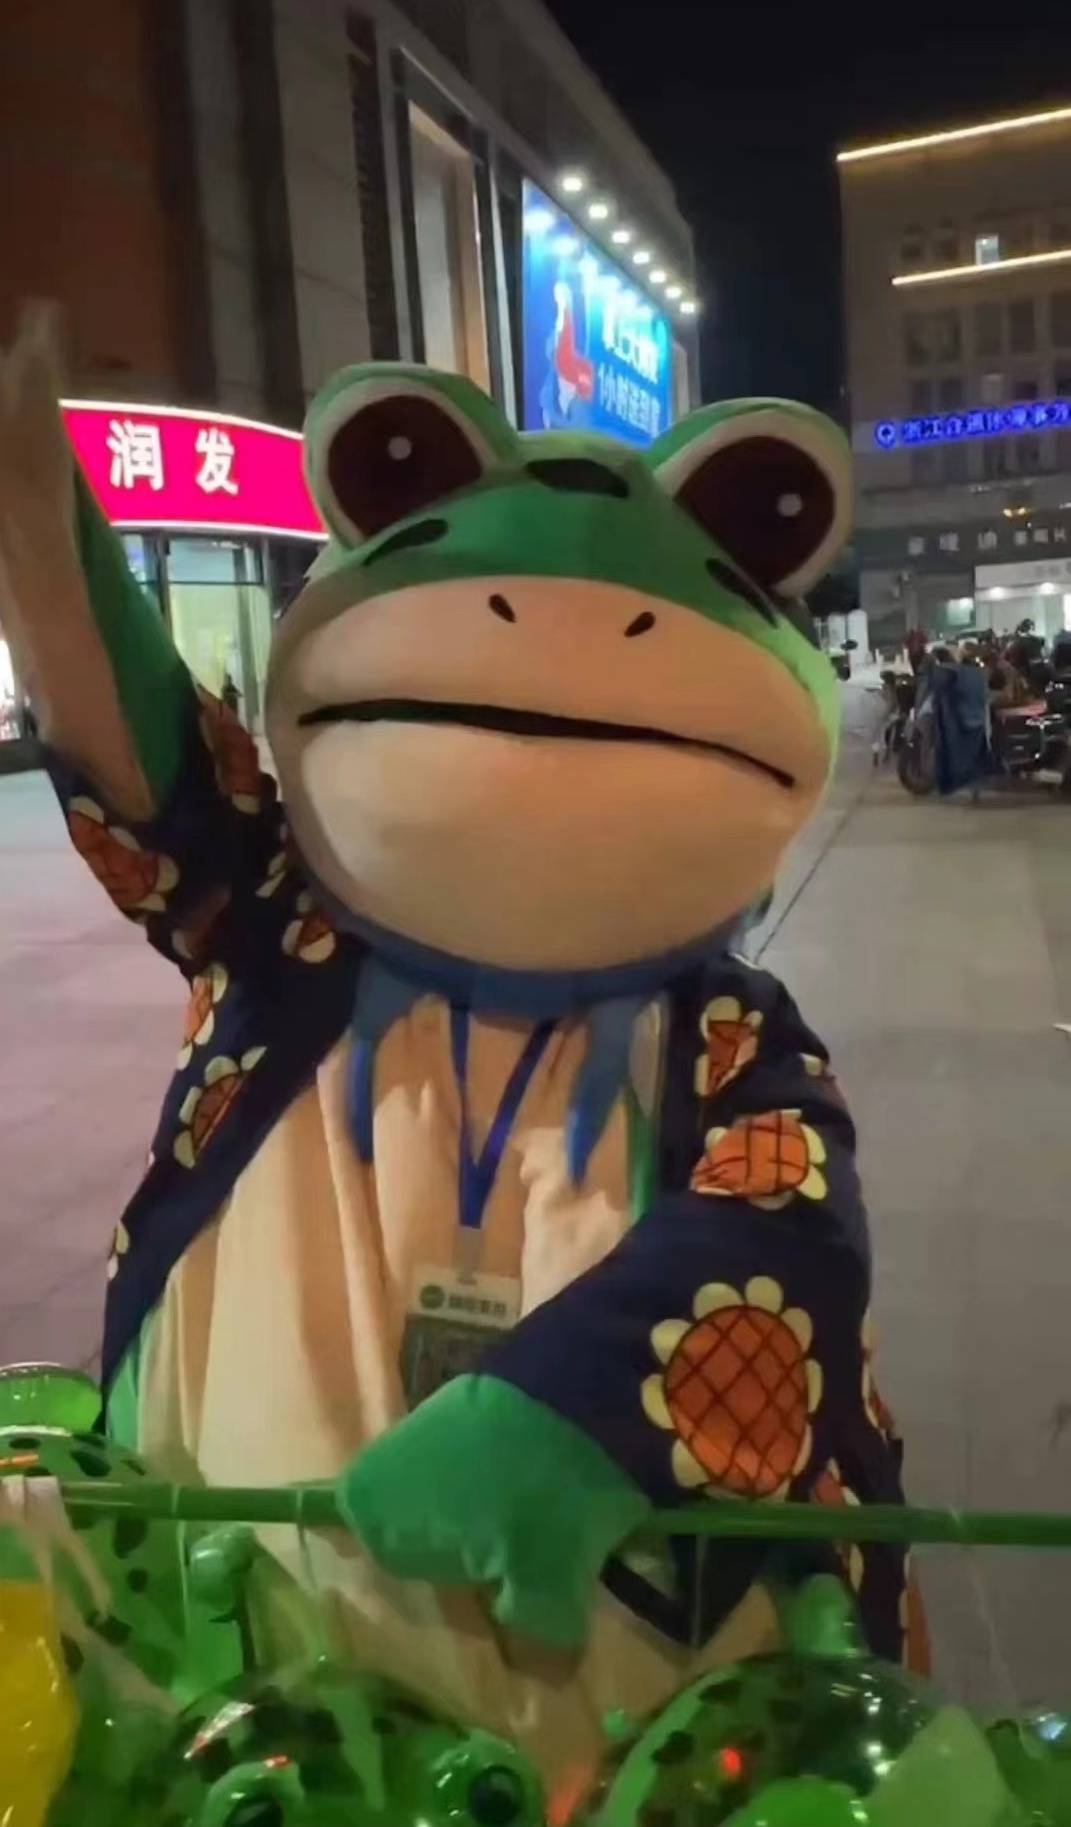 “卖崽青蛙”讲述：青蛙服里有风扇，摔倒后“挺疼”，被城管、保安、摊贩嫌弃，但还是感受到了乐趣